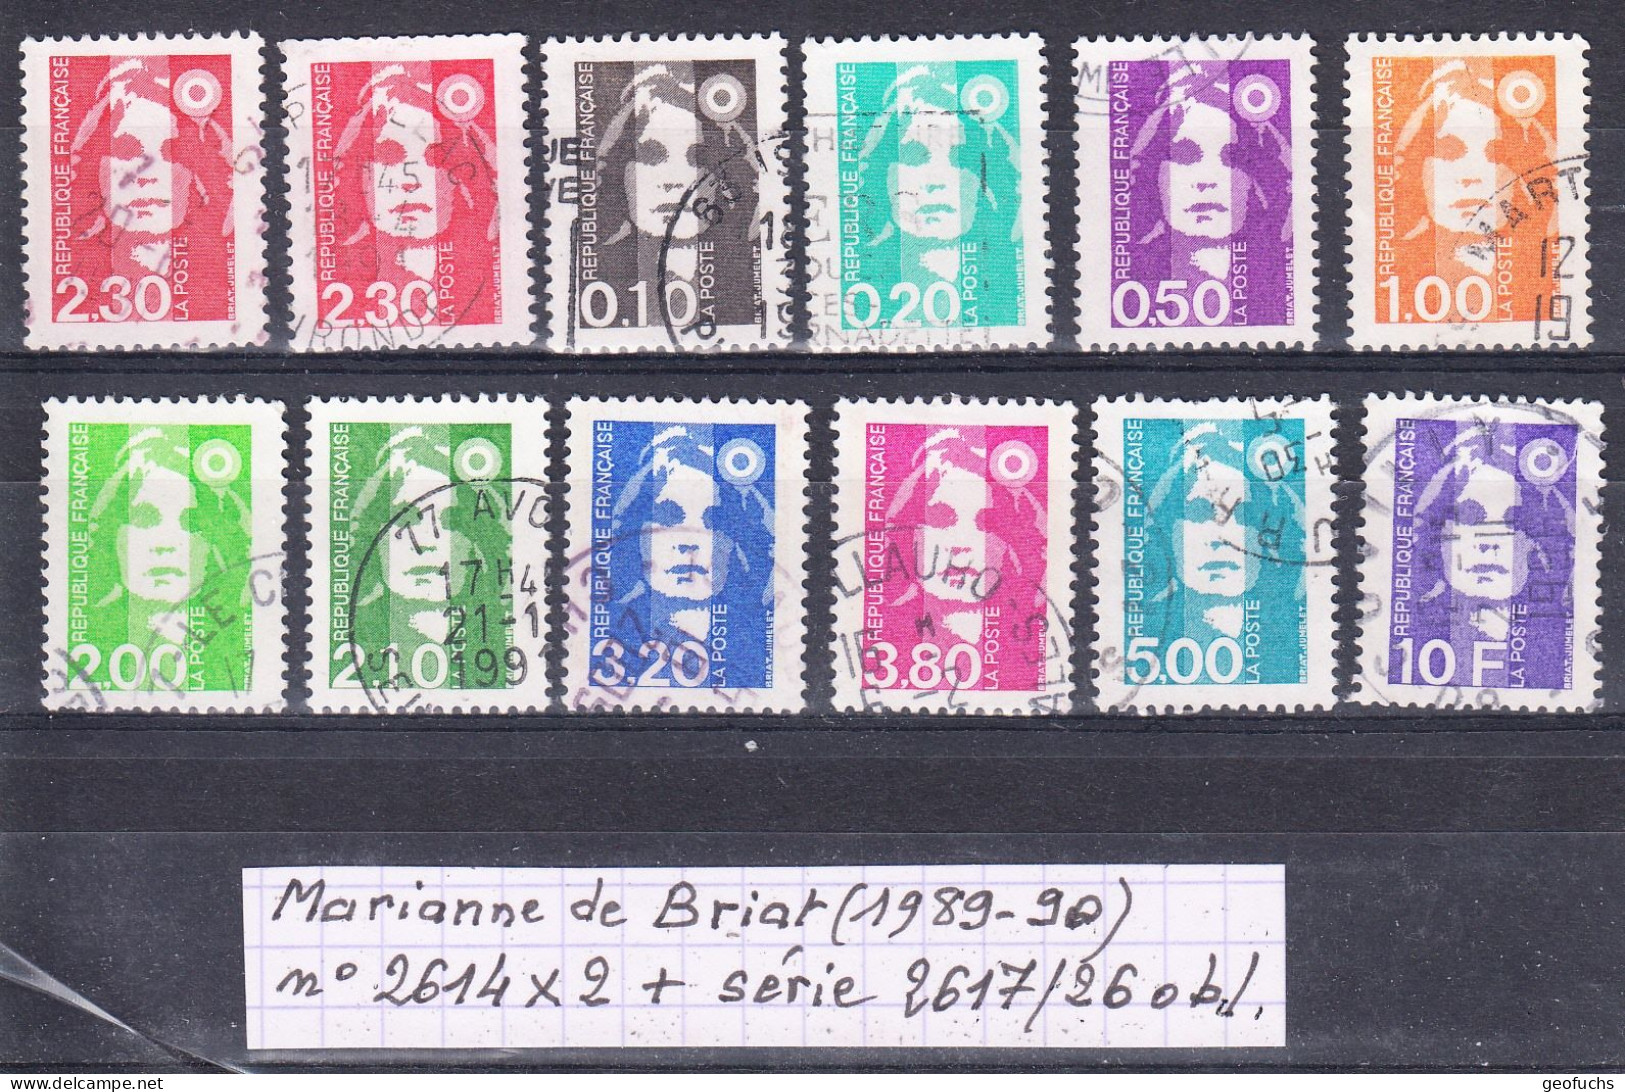 France Marianne De Briat (1989-90) Y/T N° 2614X2 + Série 2617/26 Oblitérés (lot 1) - 1989-1996 Bicentenial Marianne